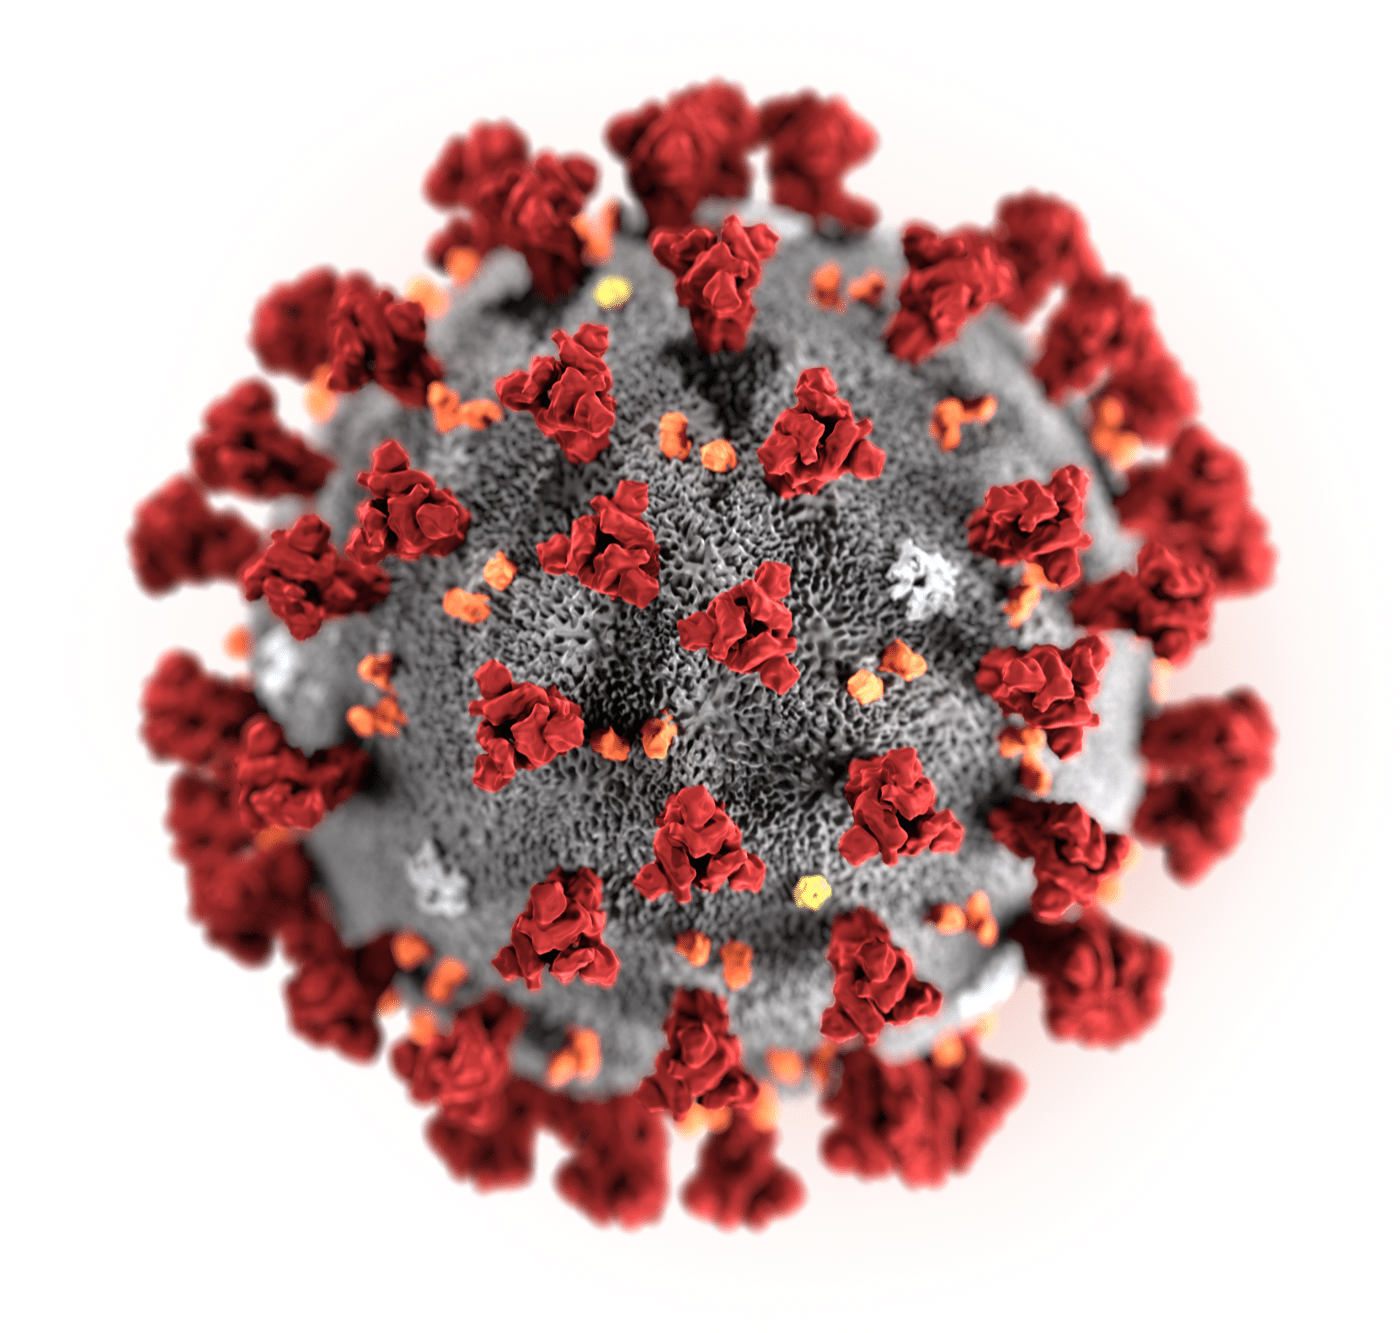 4 More Georgians test positive for coronavirus